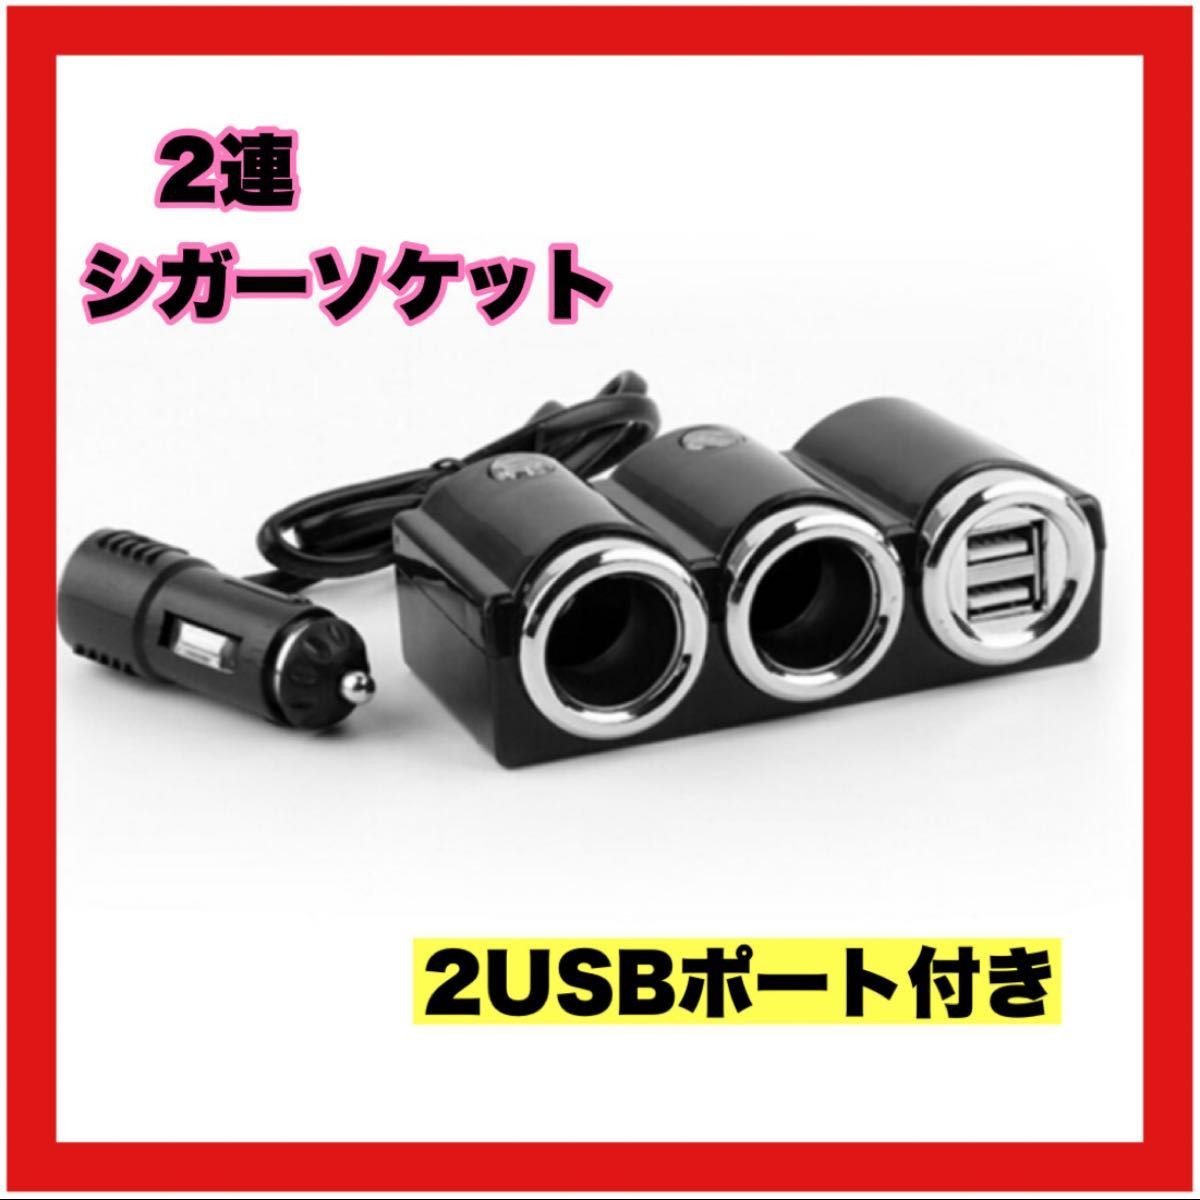 車載 充電器 シガーソケット ダブルUSBポート カーチャージャー 分配器 スマホ USB ソケット 2連_画像1